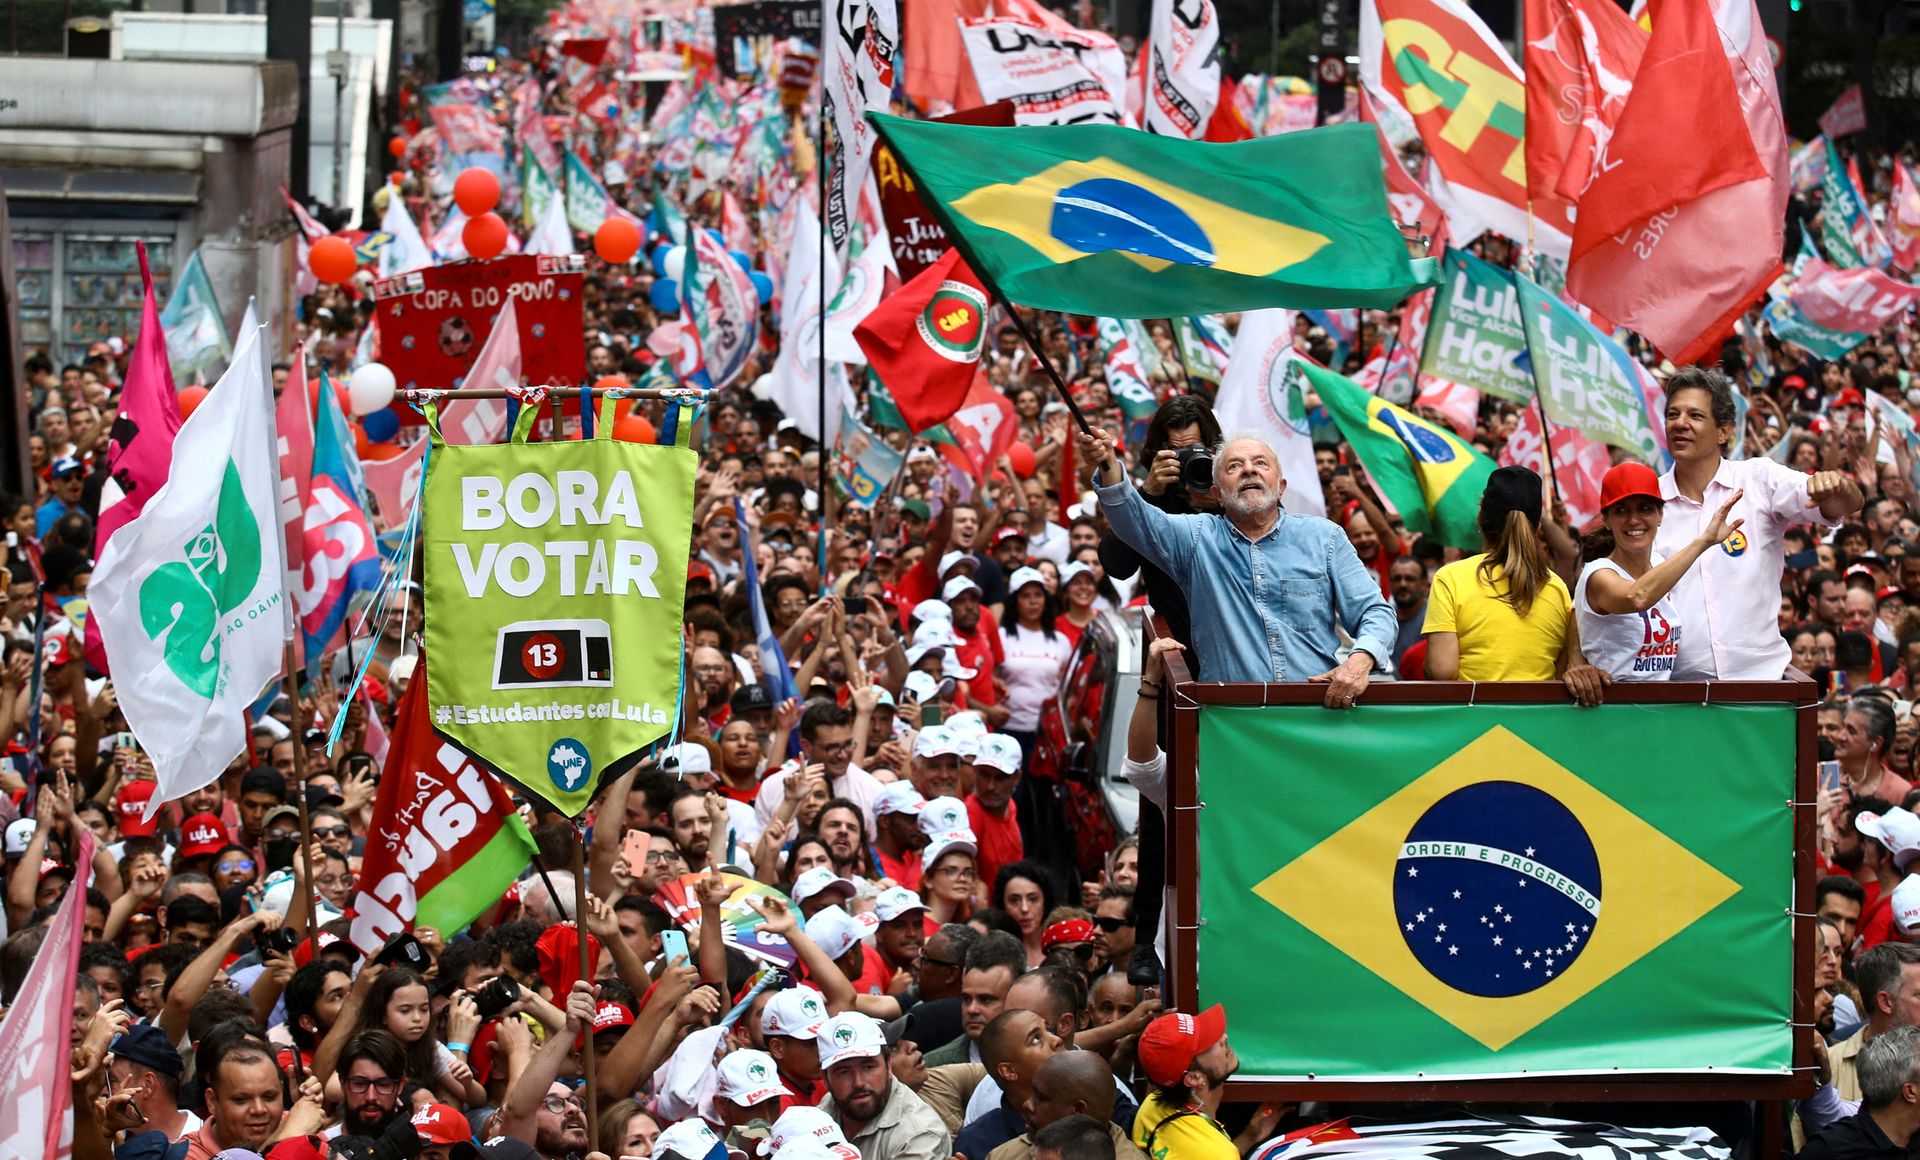 Lula veiver med det brasilianske flagget i en parade sammen med mange mennesker